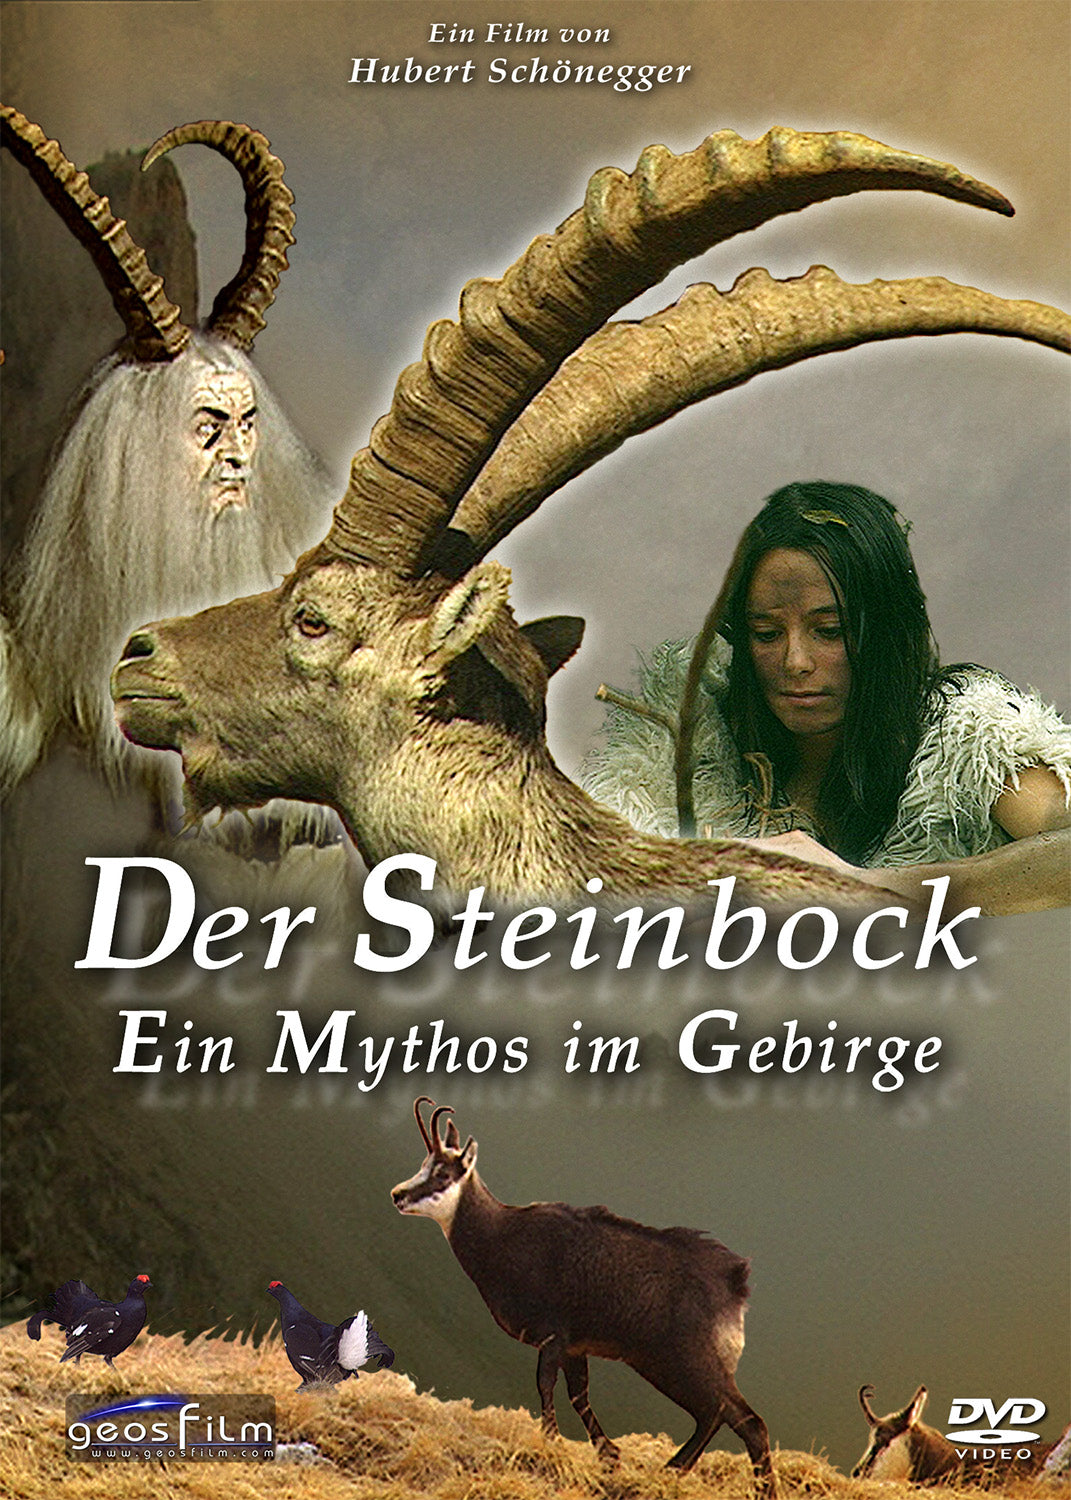 Der Steinbock – Ein Mythos im Gebirge